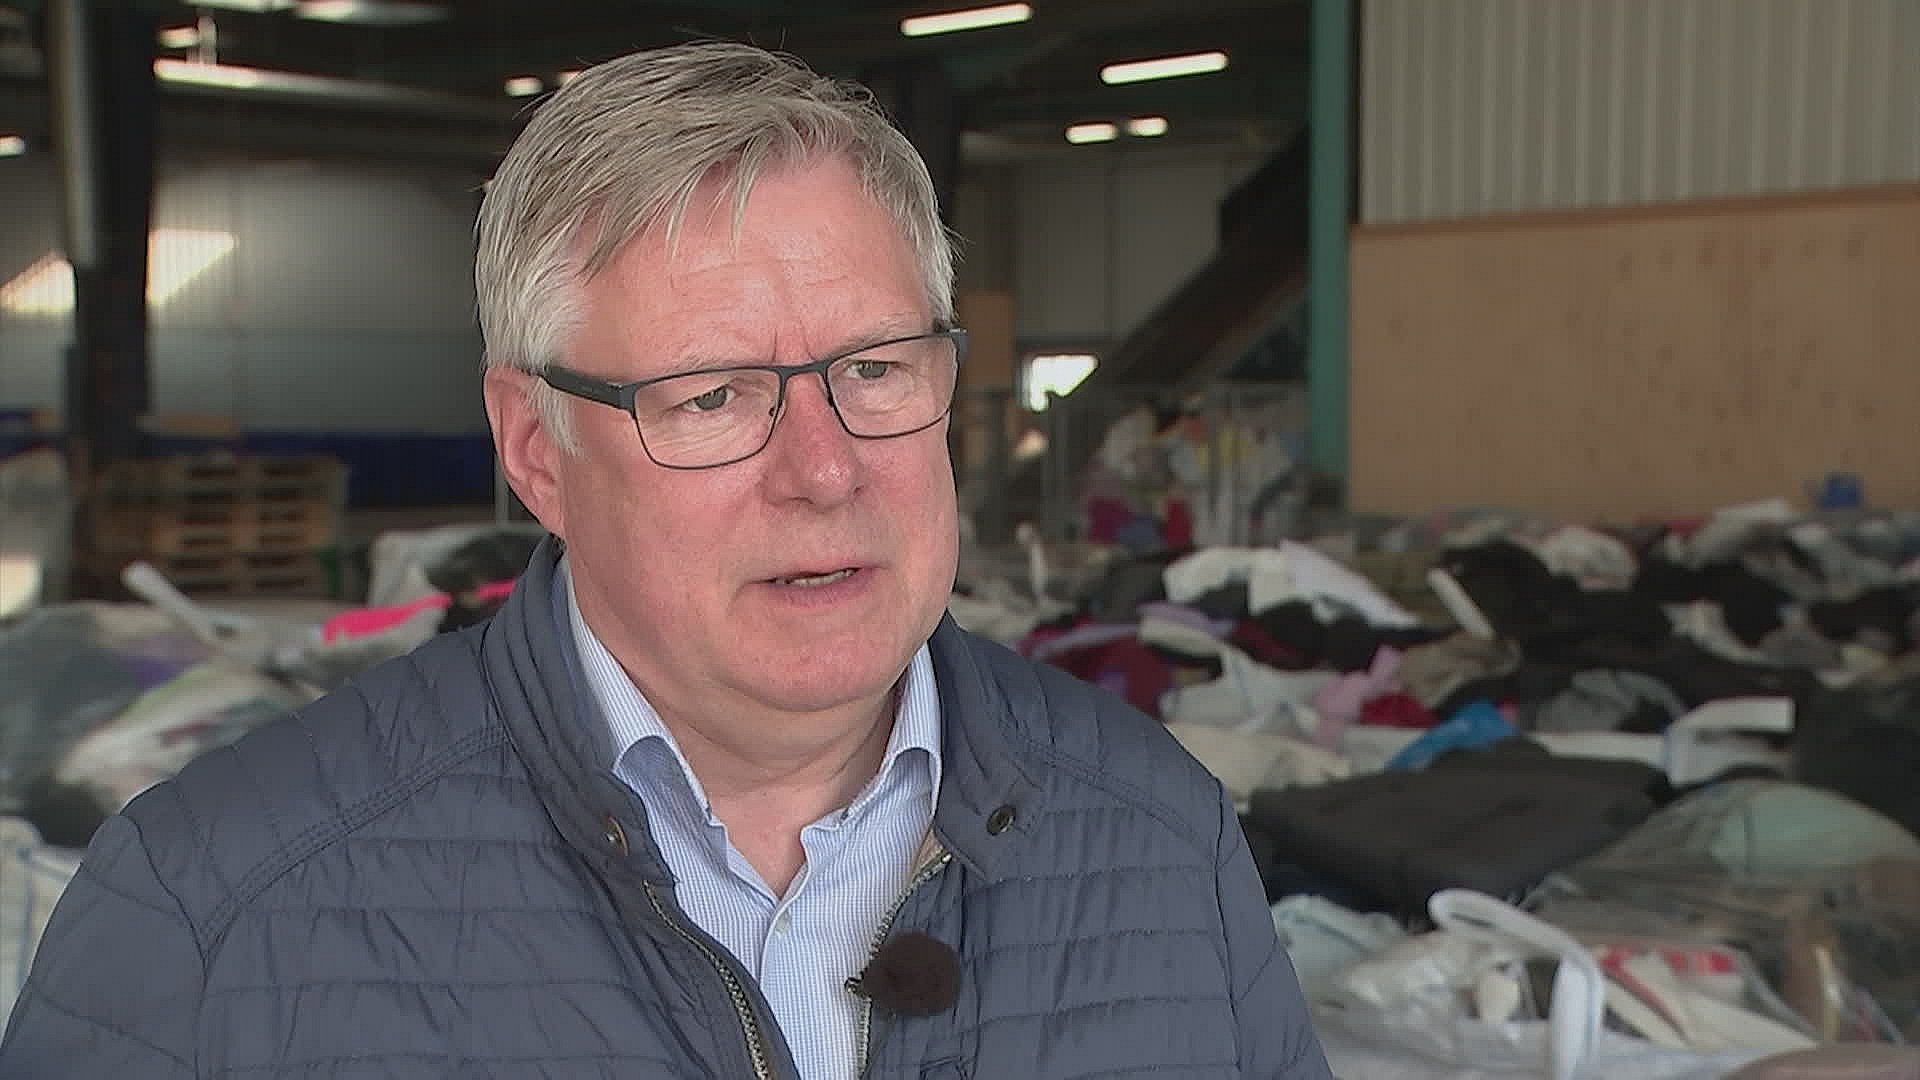 Ordningen med at kommunen skal indsamle tøjaffald er ikke klar endnu, siger teknik- og miljøformand i Hjørring Kommune Søren Smalbro (V), der frygter at brugbart tøj vil blive brændt.